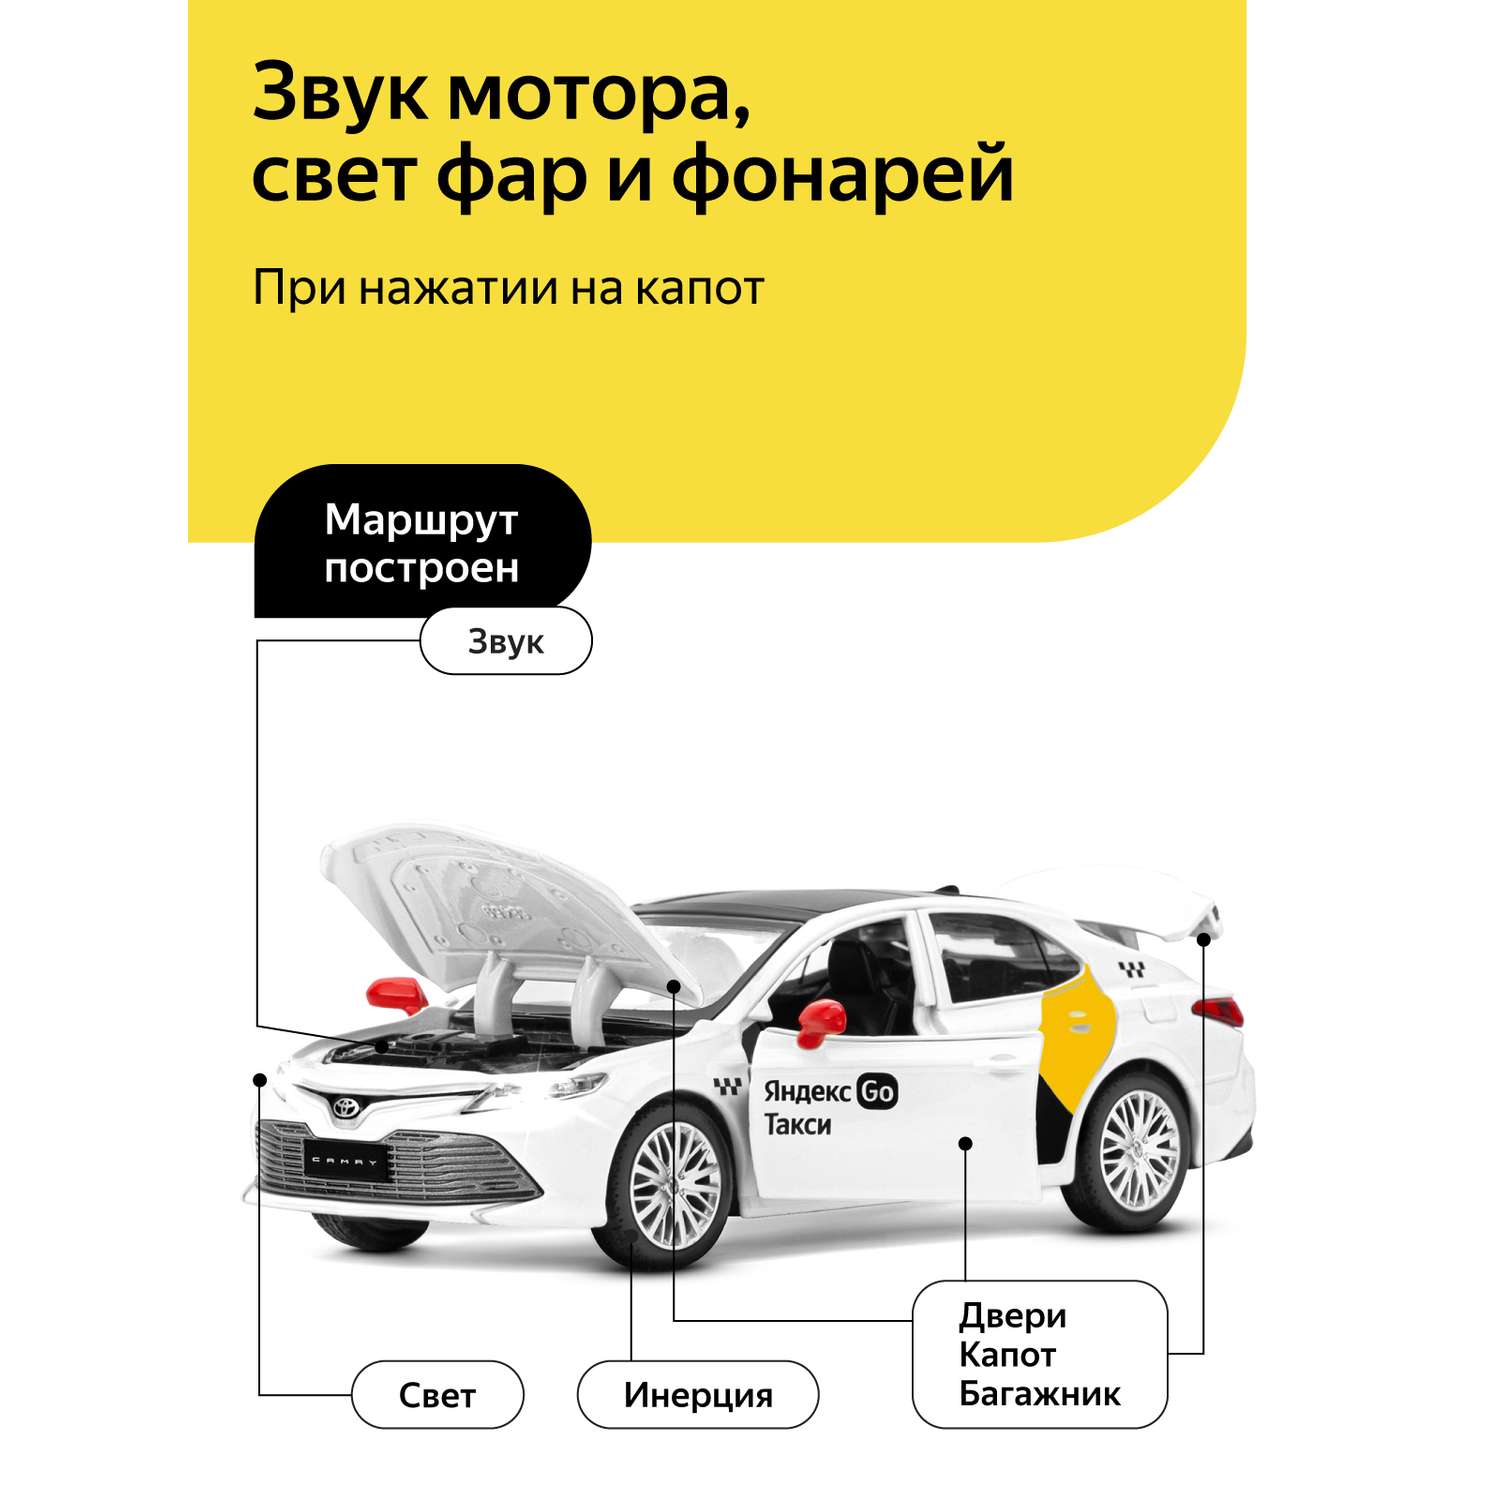 Машинка металлическая Яндекс GO 1:34 Toyota Camry белый инерция JB1251483 - фото 2